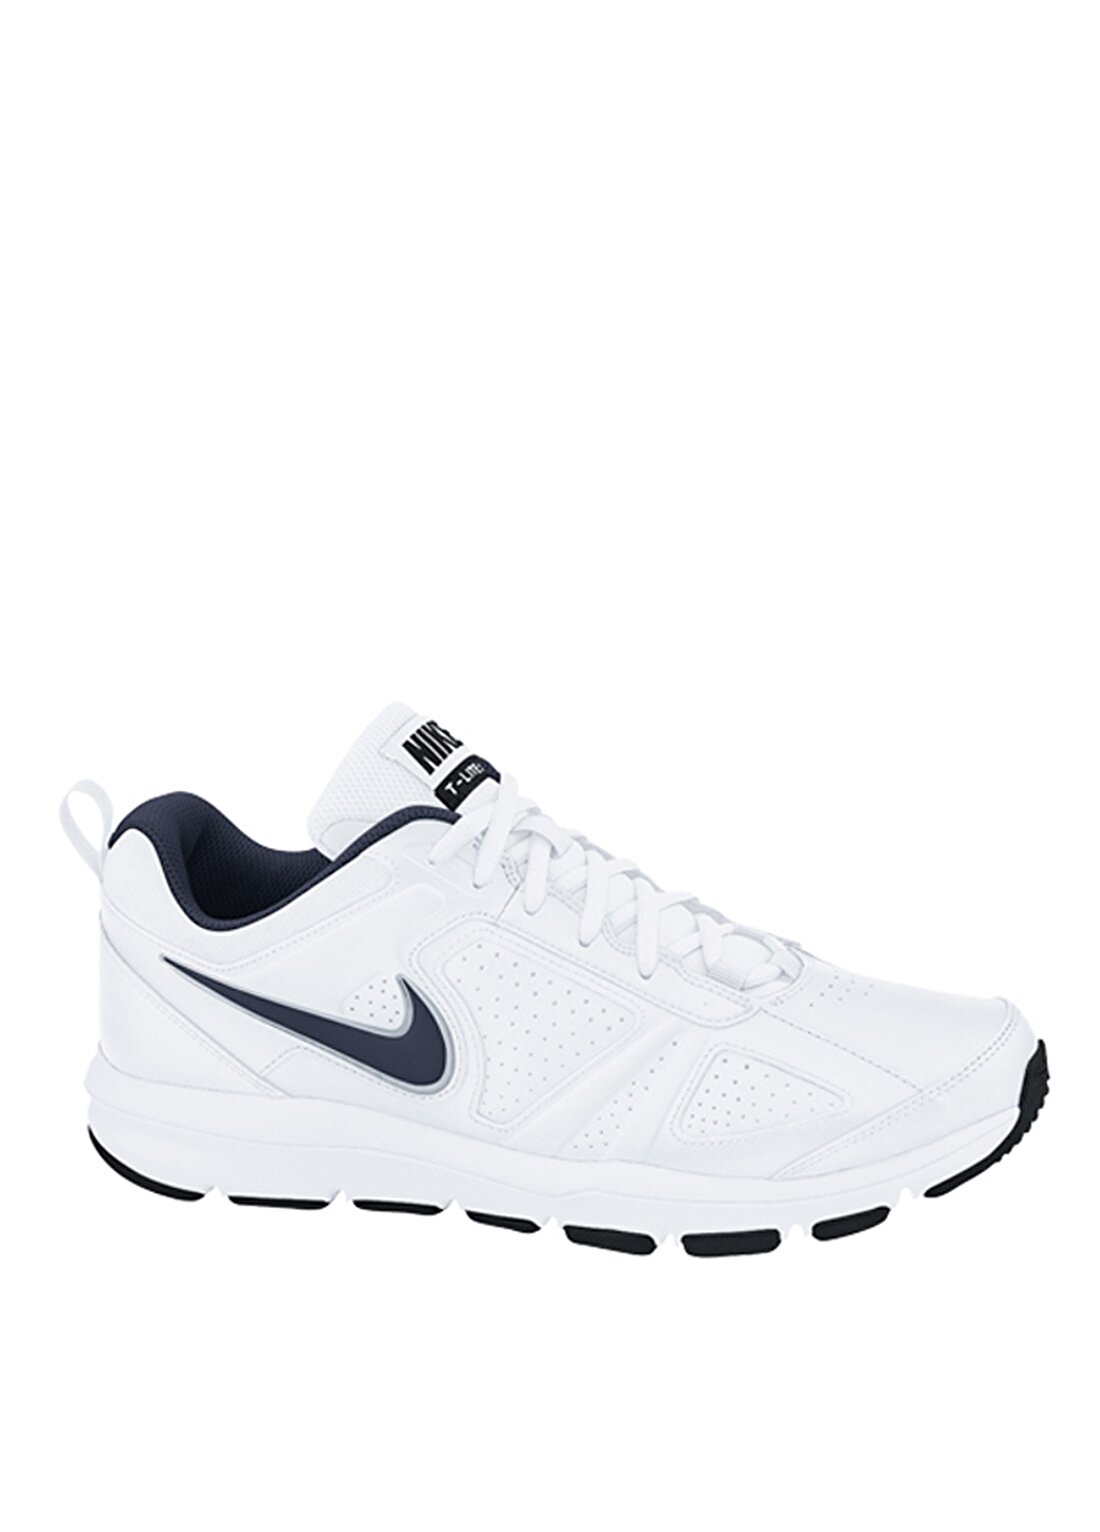 Nike Beyaz Erkek Training Ayakkabısı 616544-101 T-LITE XI